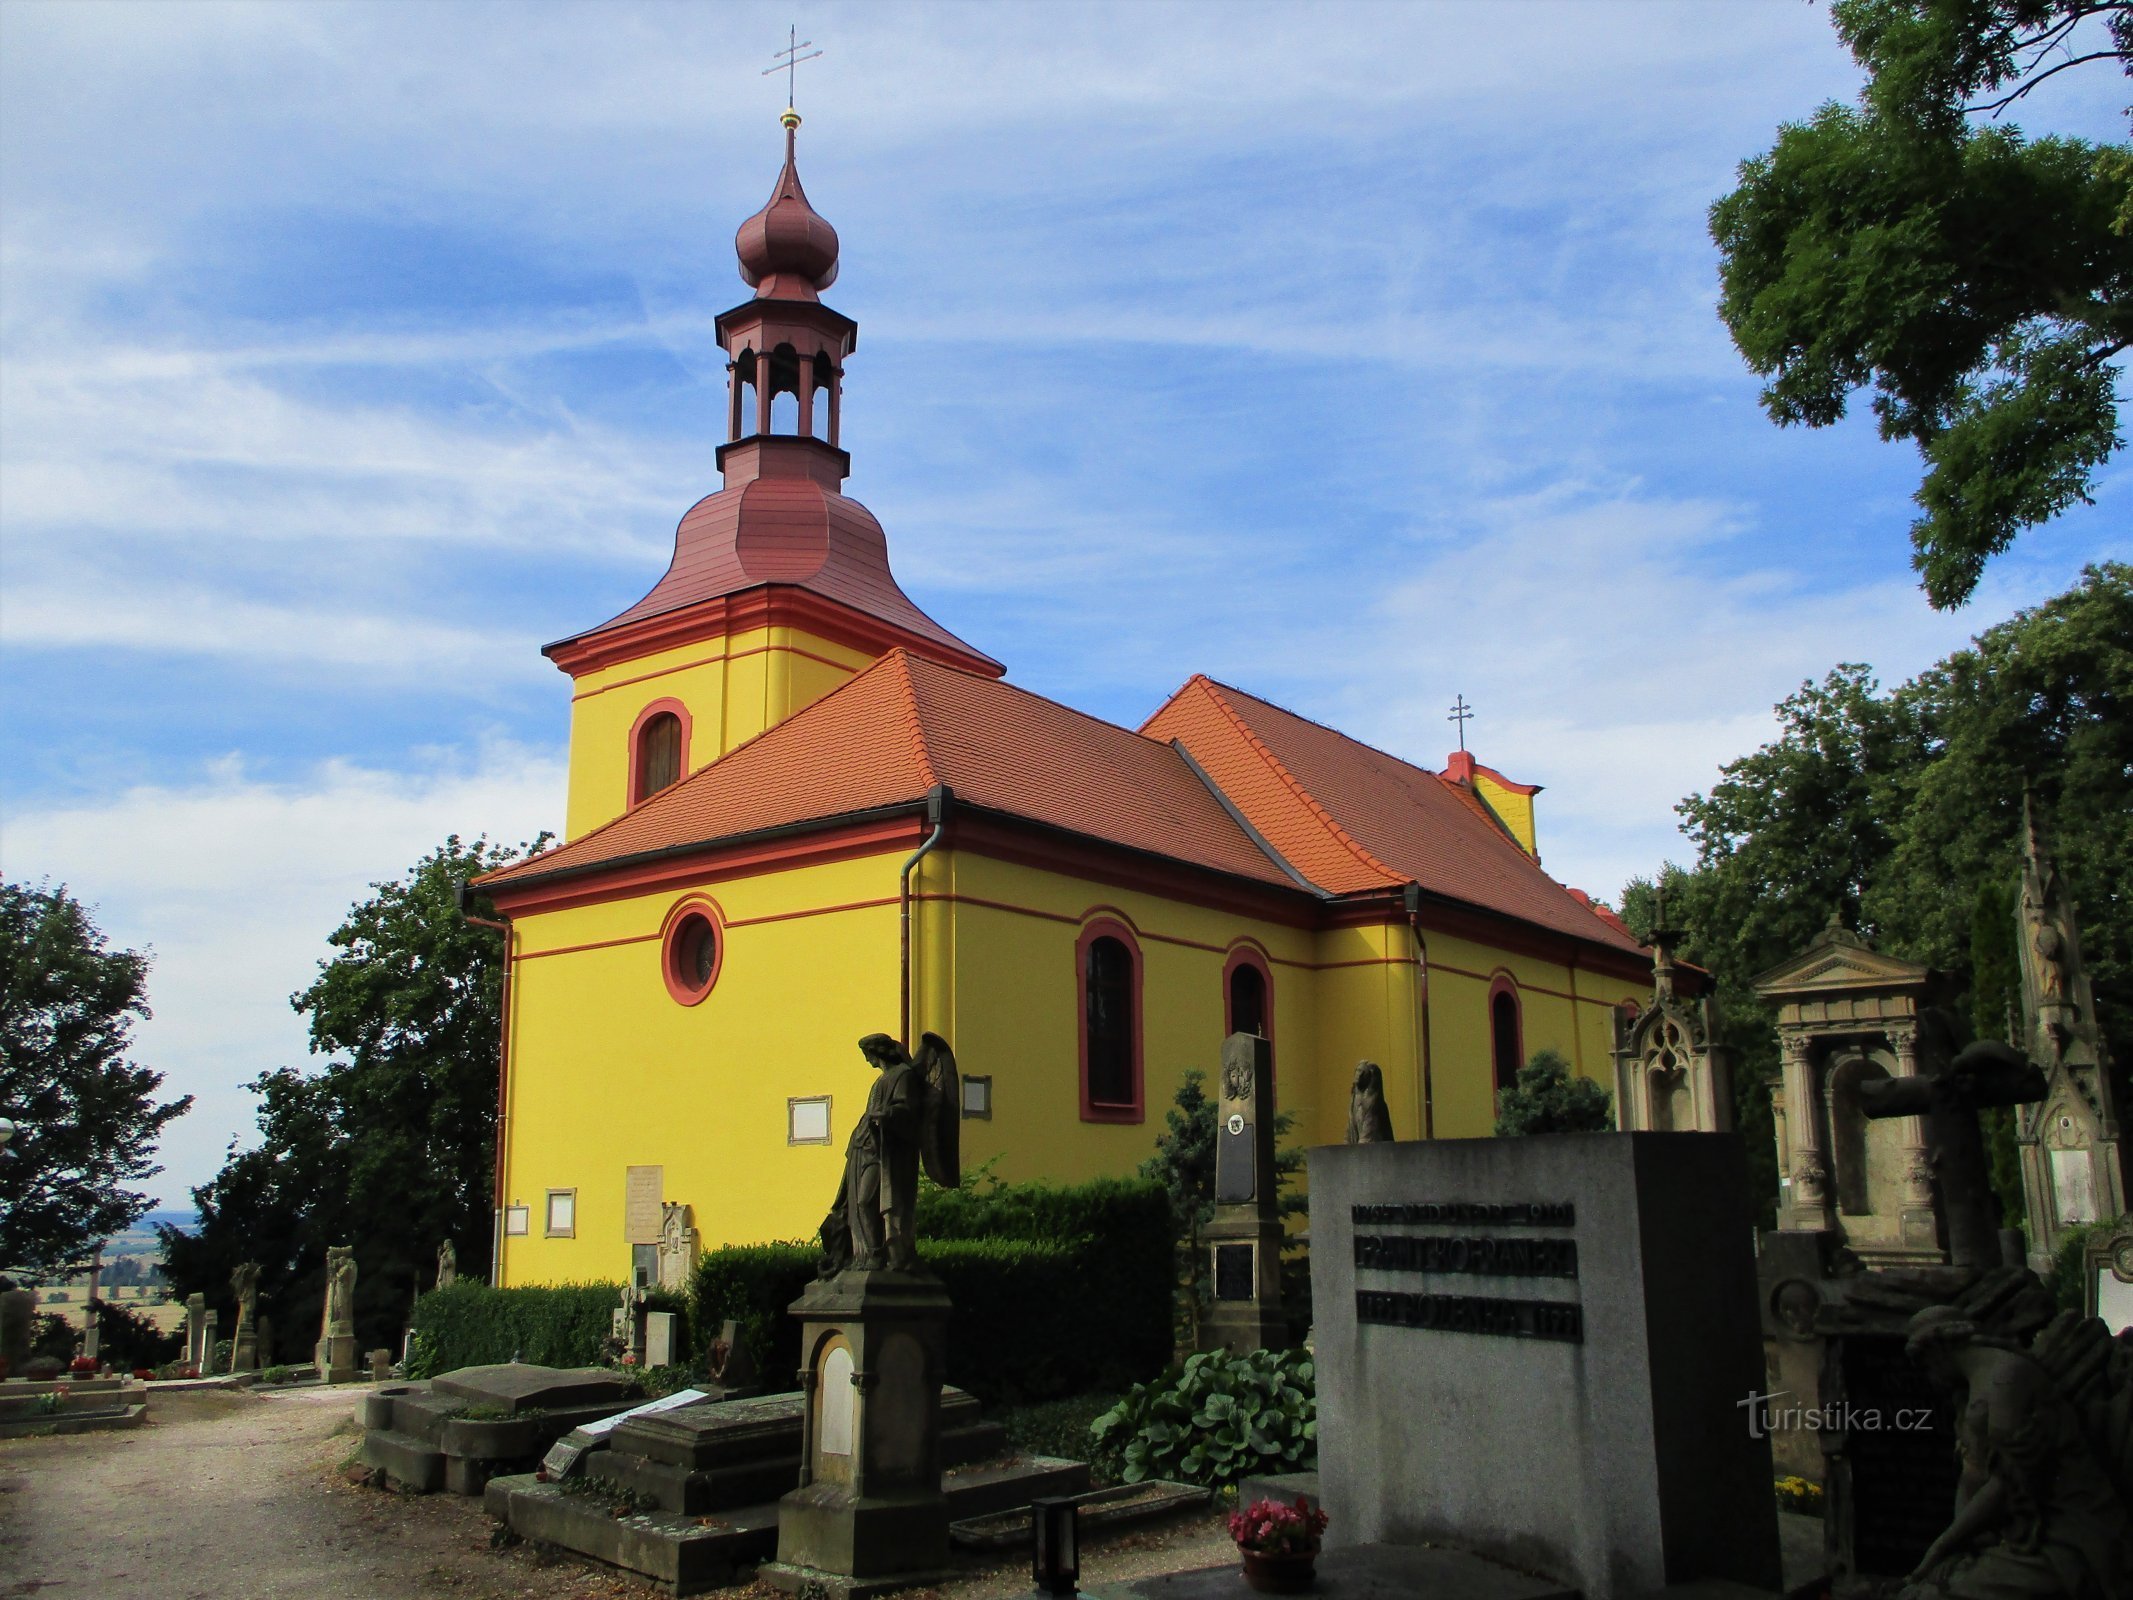 Begraafplaats Kerk St. Gothard, bisschop (Hořice, 26.7.2020/XNUMX/XNUMX)